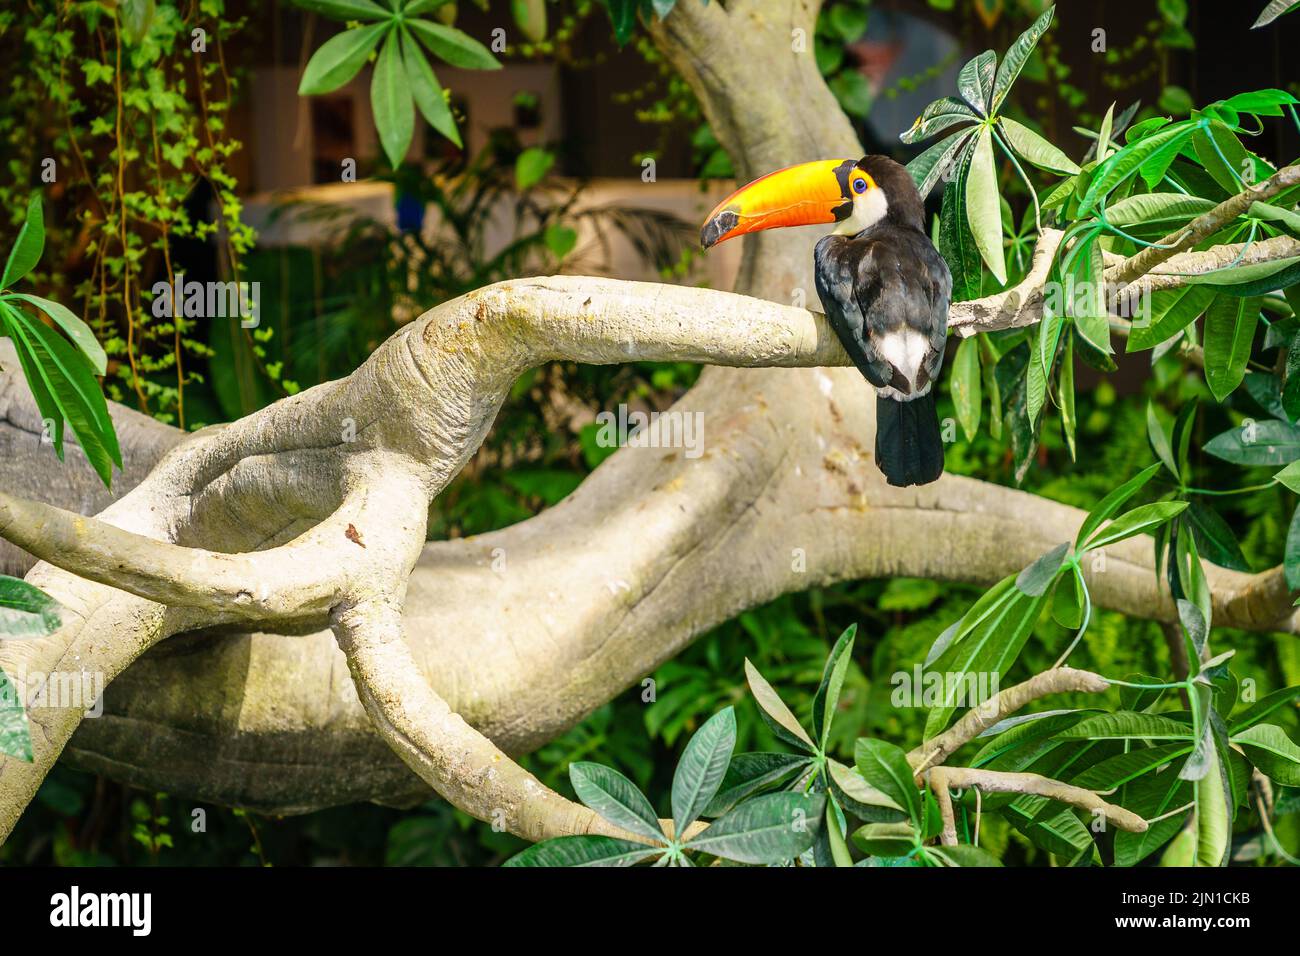 Ritratto di toucan toco o toucan gigante in un santuario degli uccelli Foto Stock